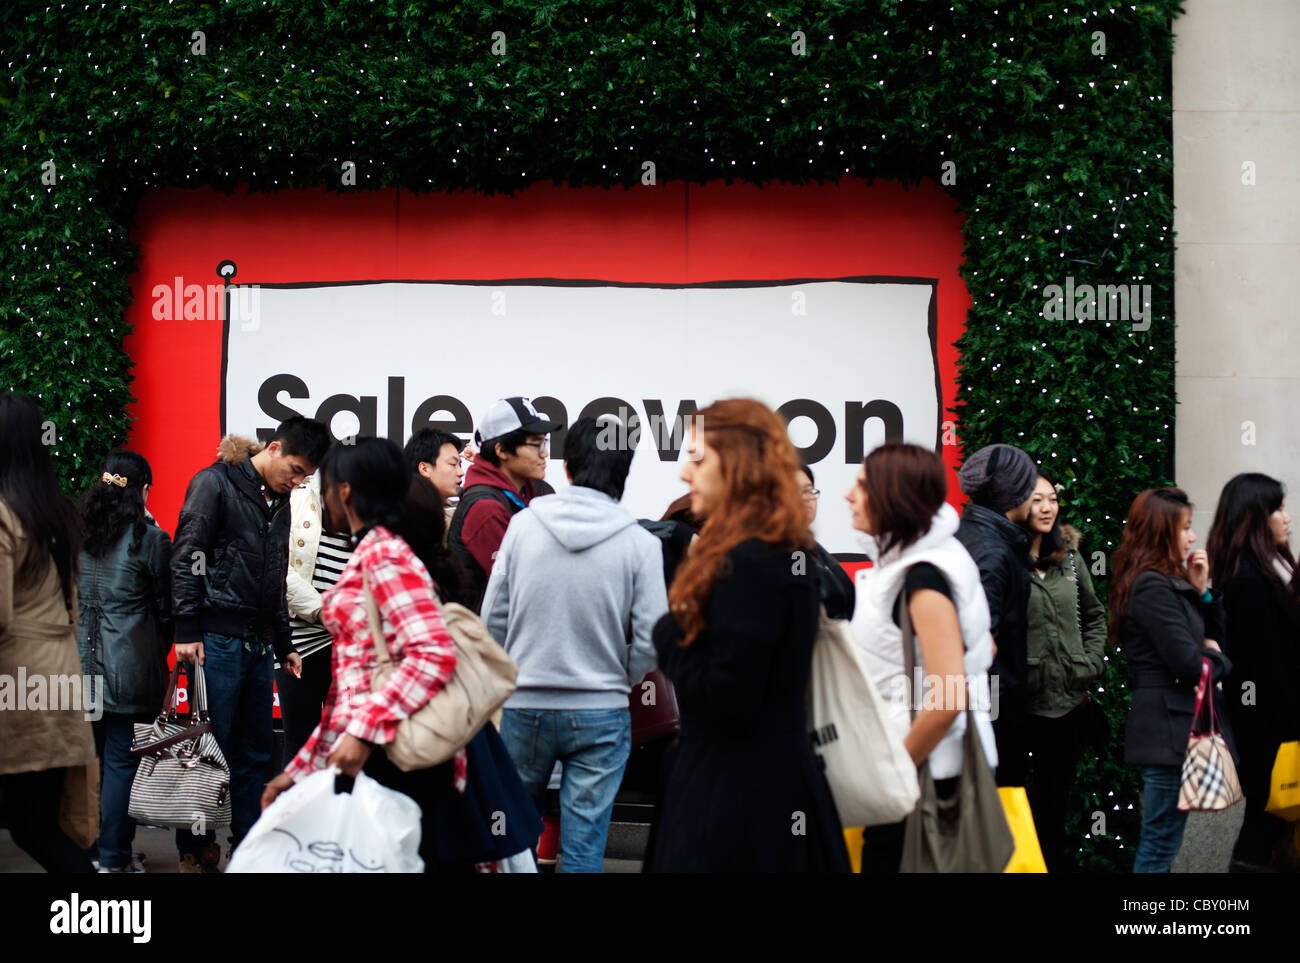 Bargain-foule chasse file d'attente pour le lendemain de la vente à Selfrodge's Store, Londres, Angleterre, Royaume-Uni, Europe Banque D'Images